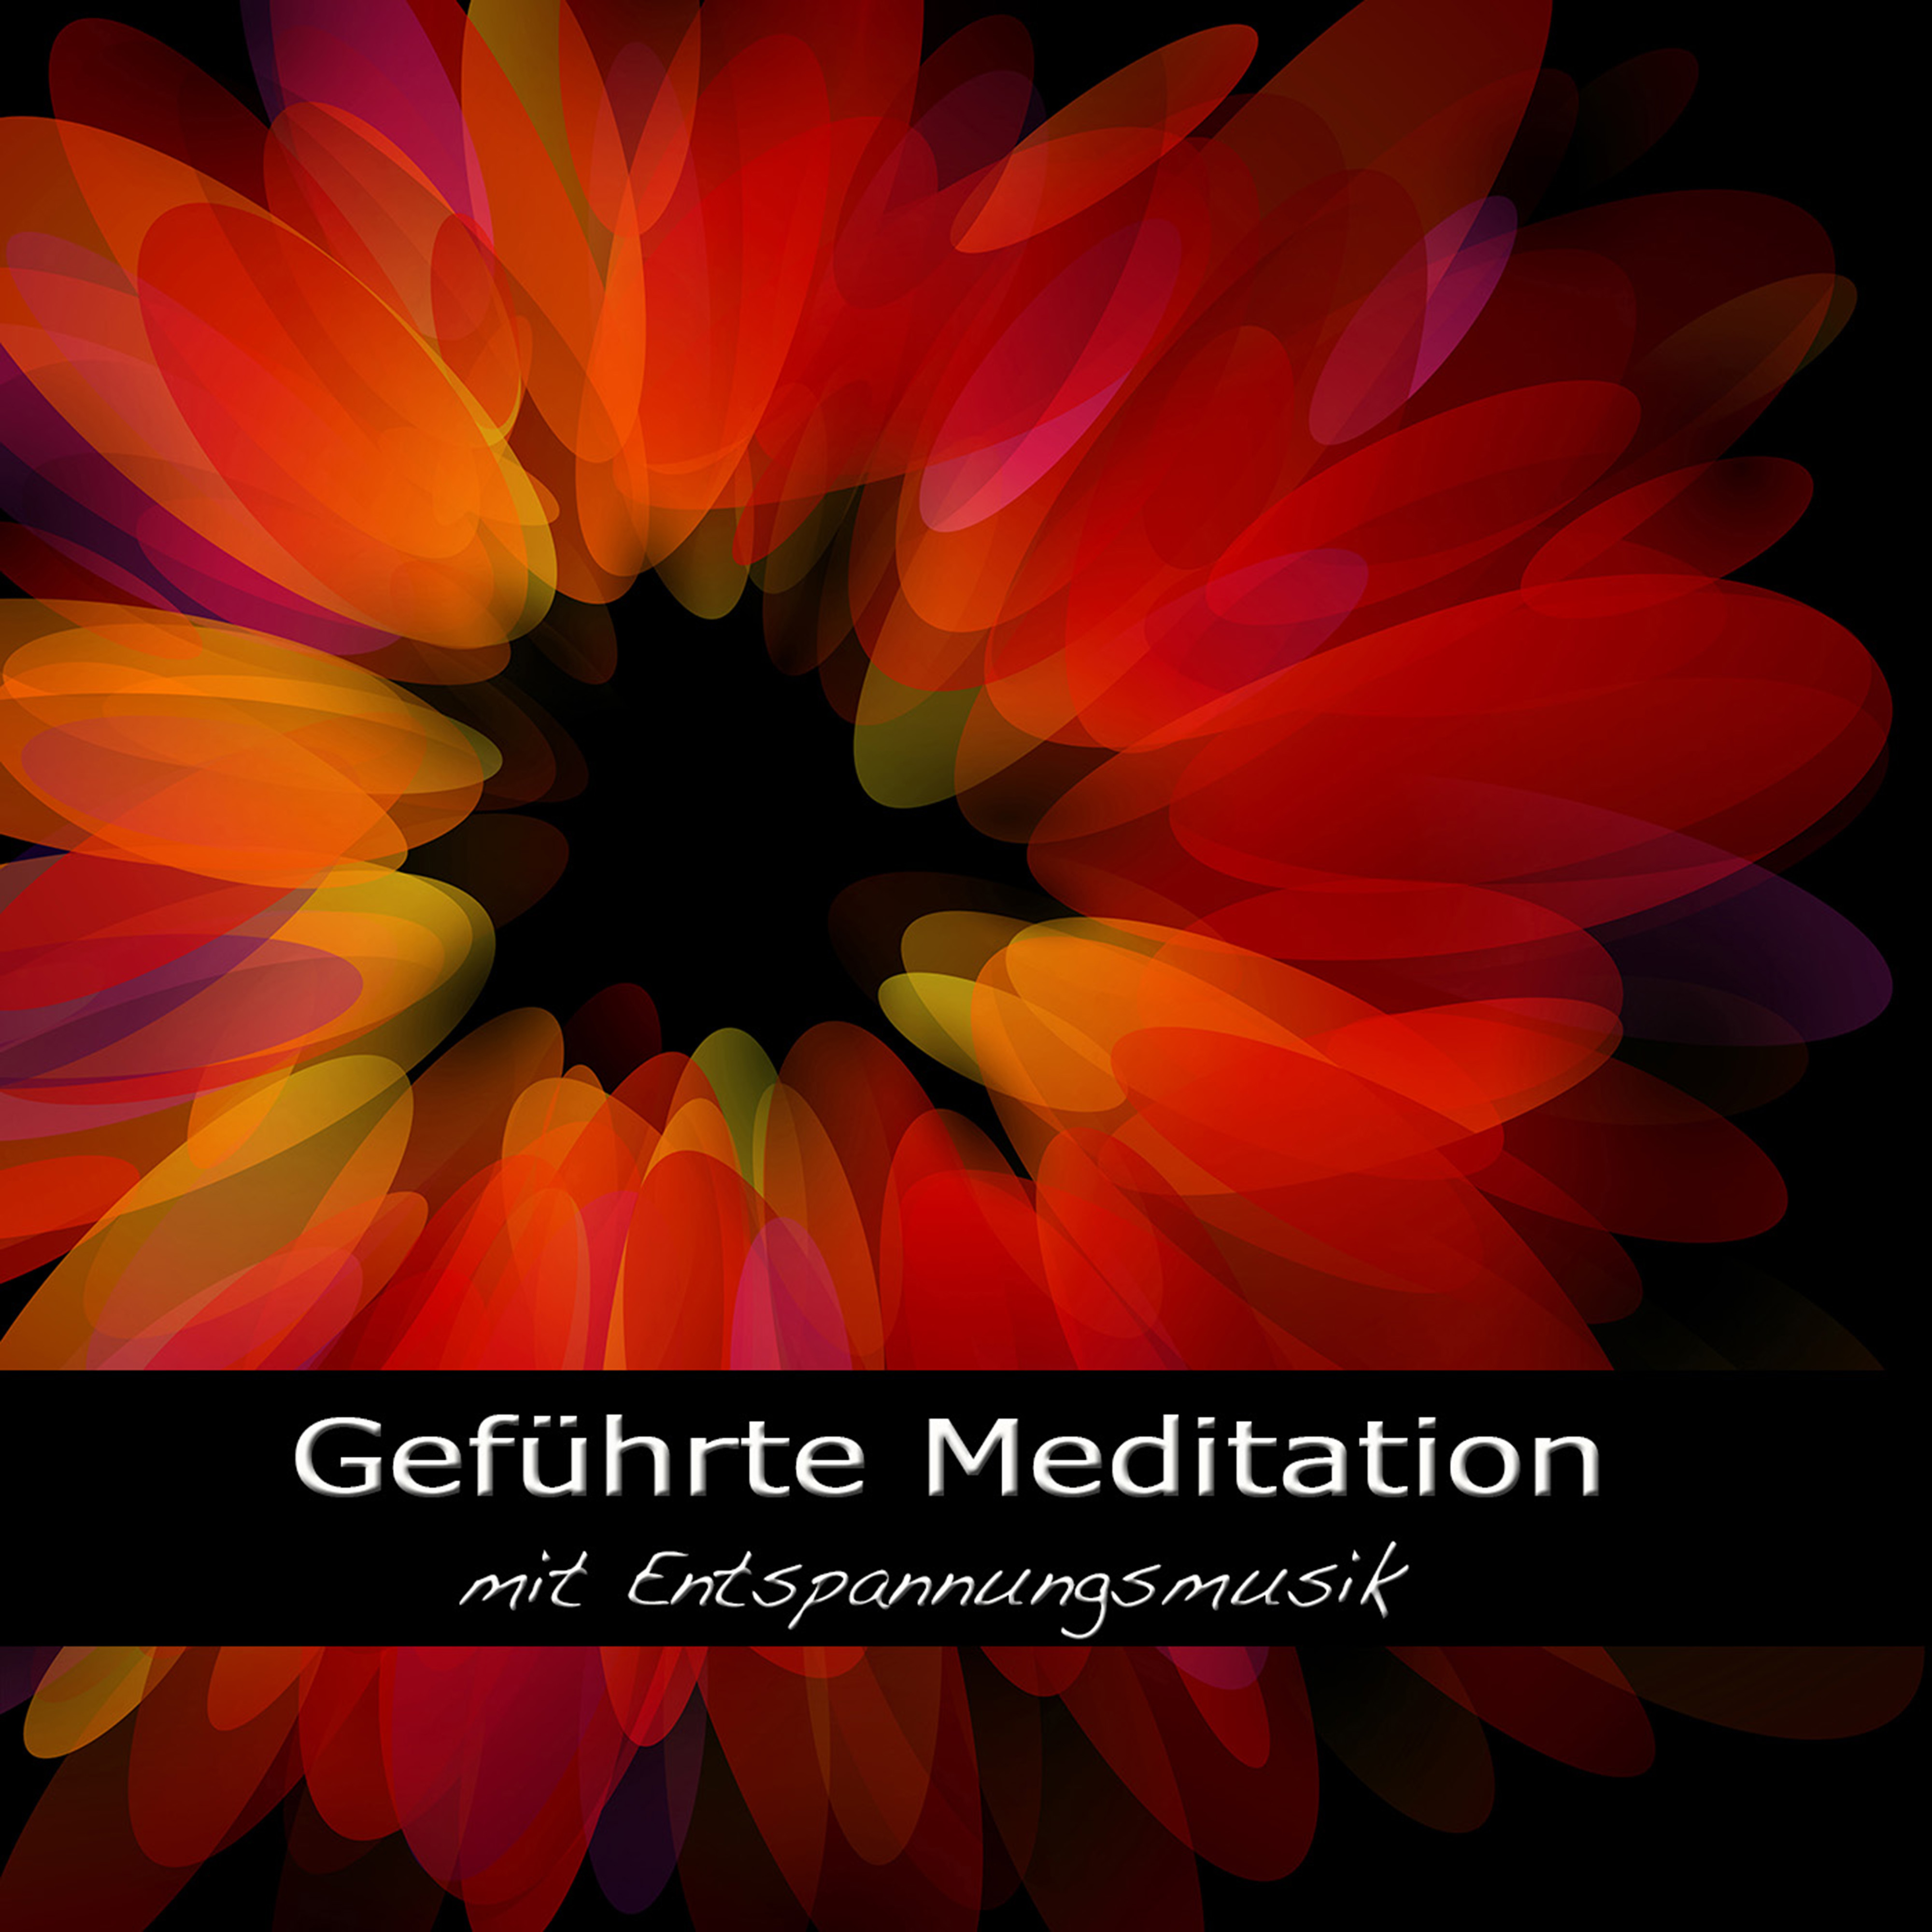 Gefü hrte Meditation mit Entspannungsmusik  Stressabbau, Wellness und Entspannen